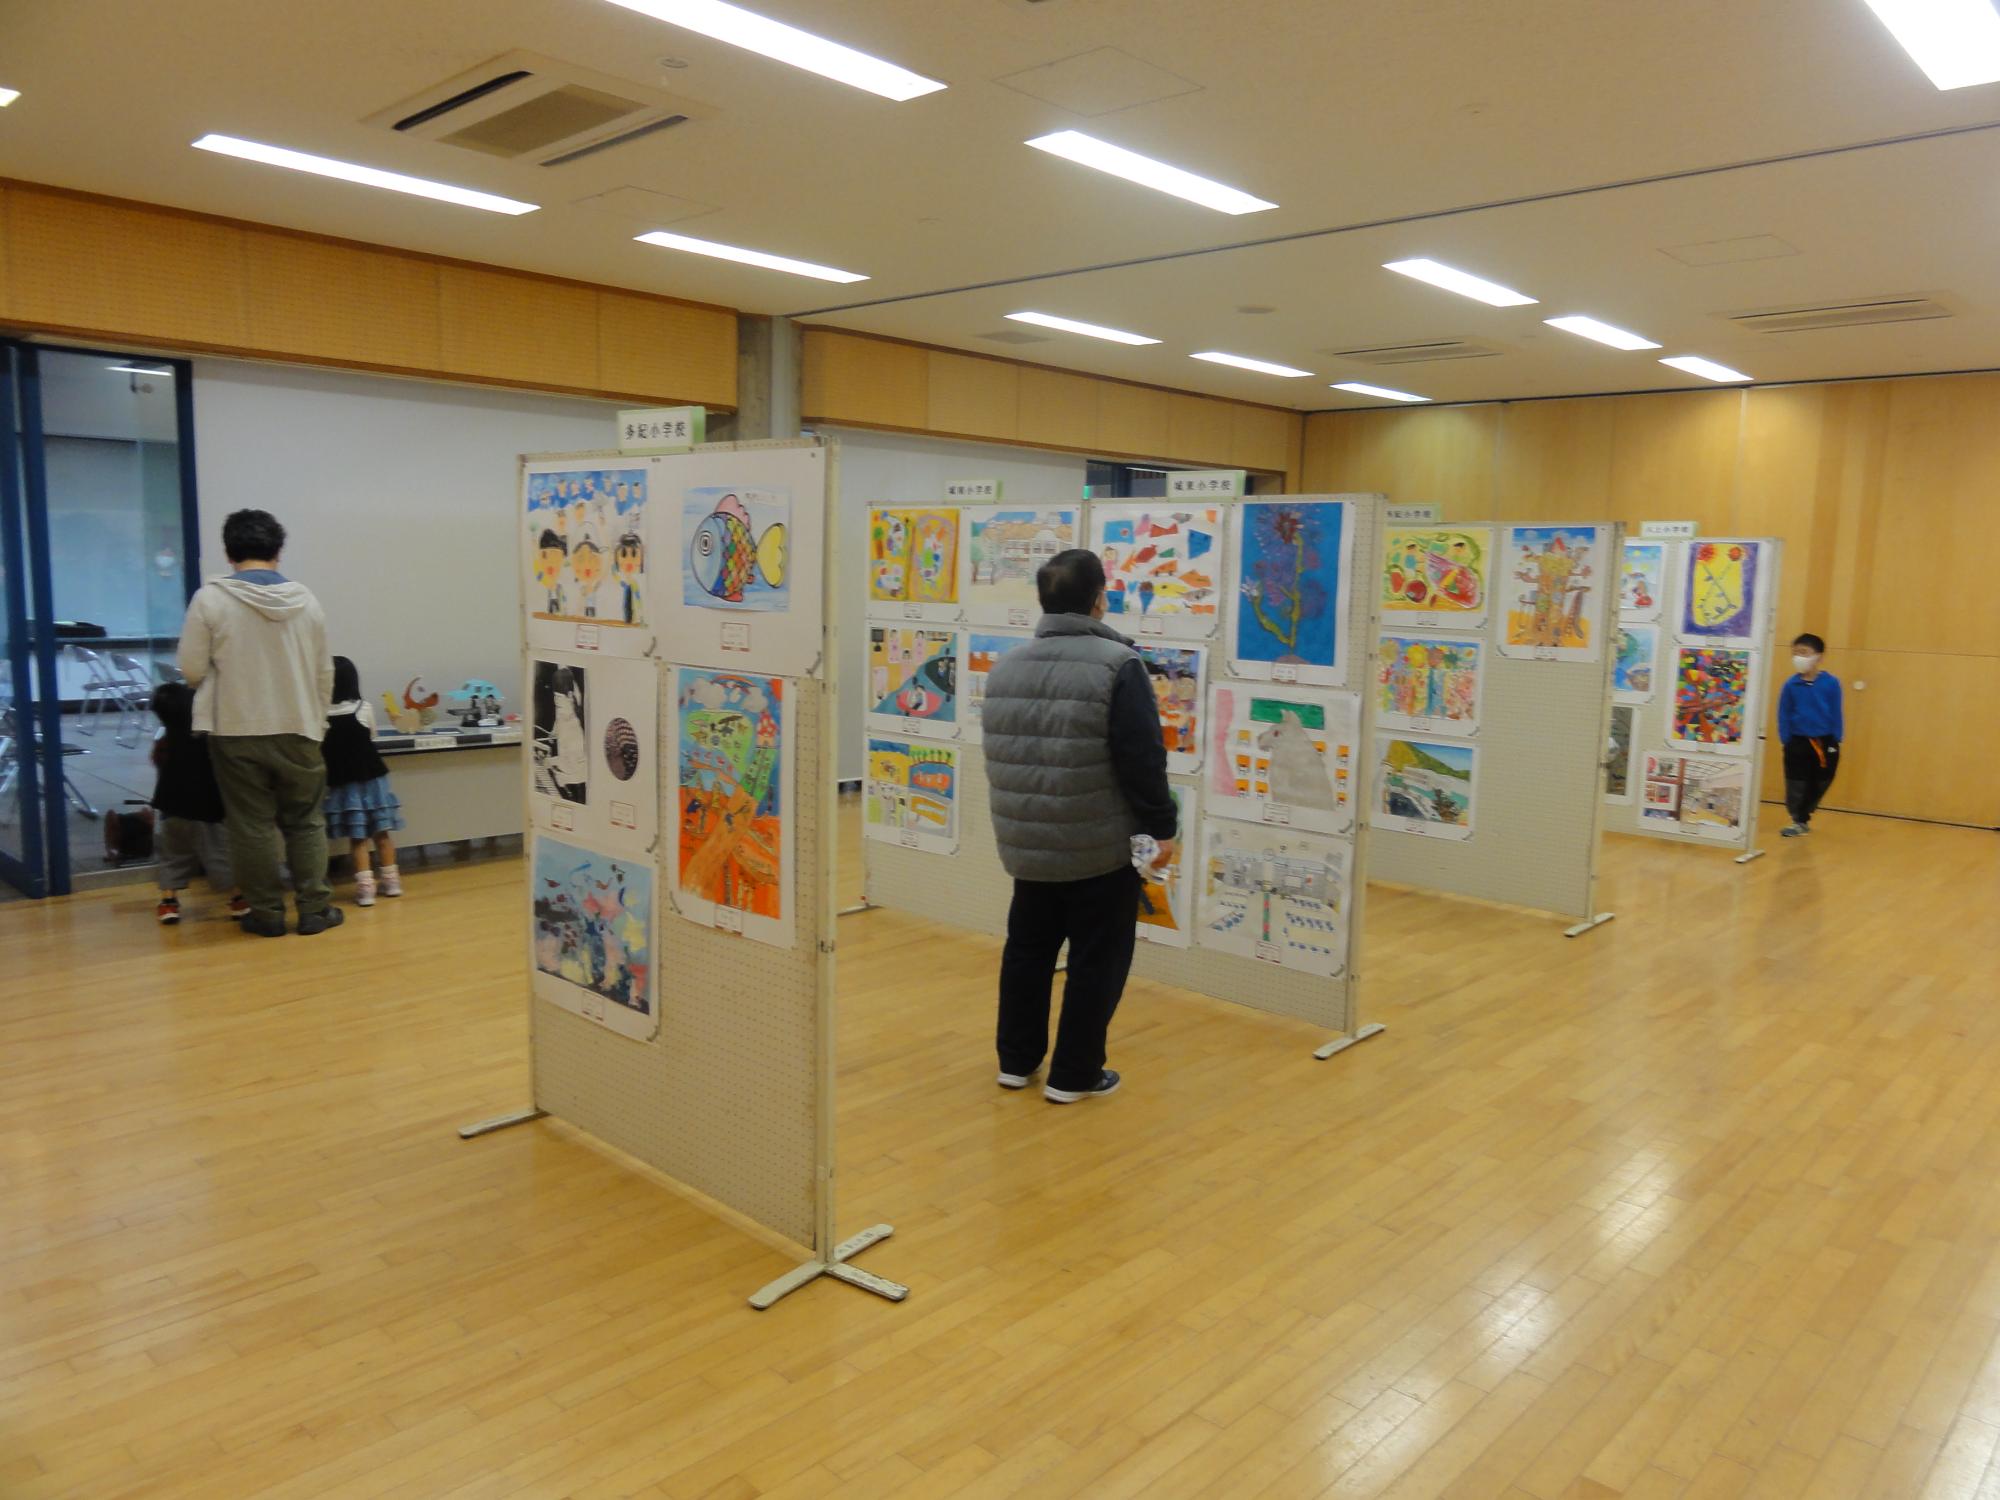 パネル4枚に小学生の絵画、机には工作を展示していて、来場者が作品を眺めている。